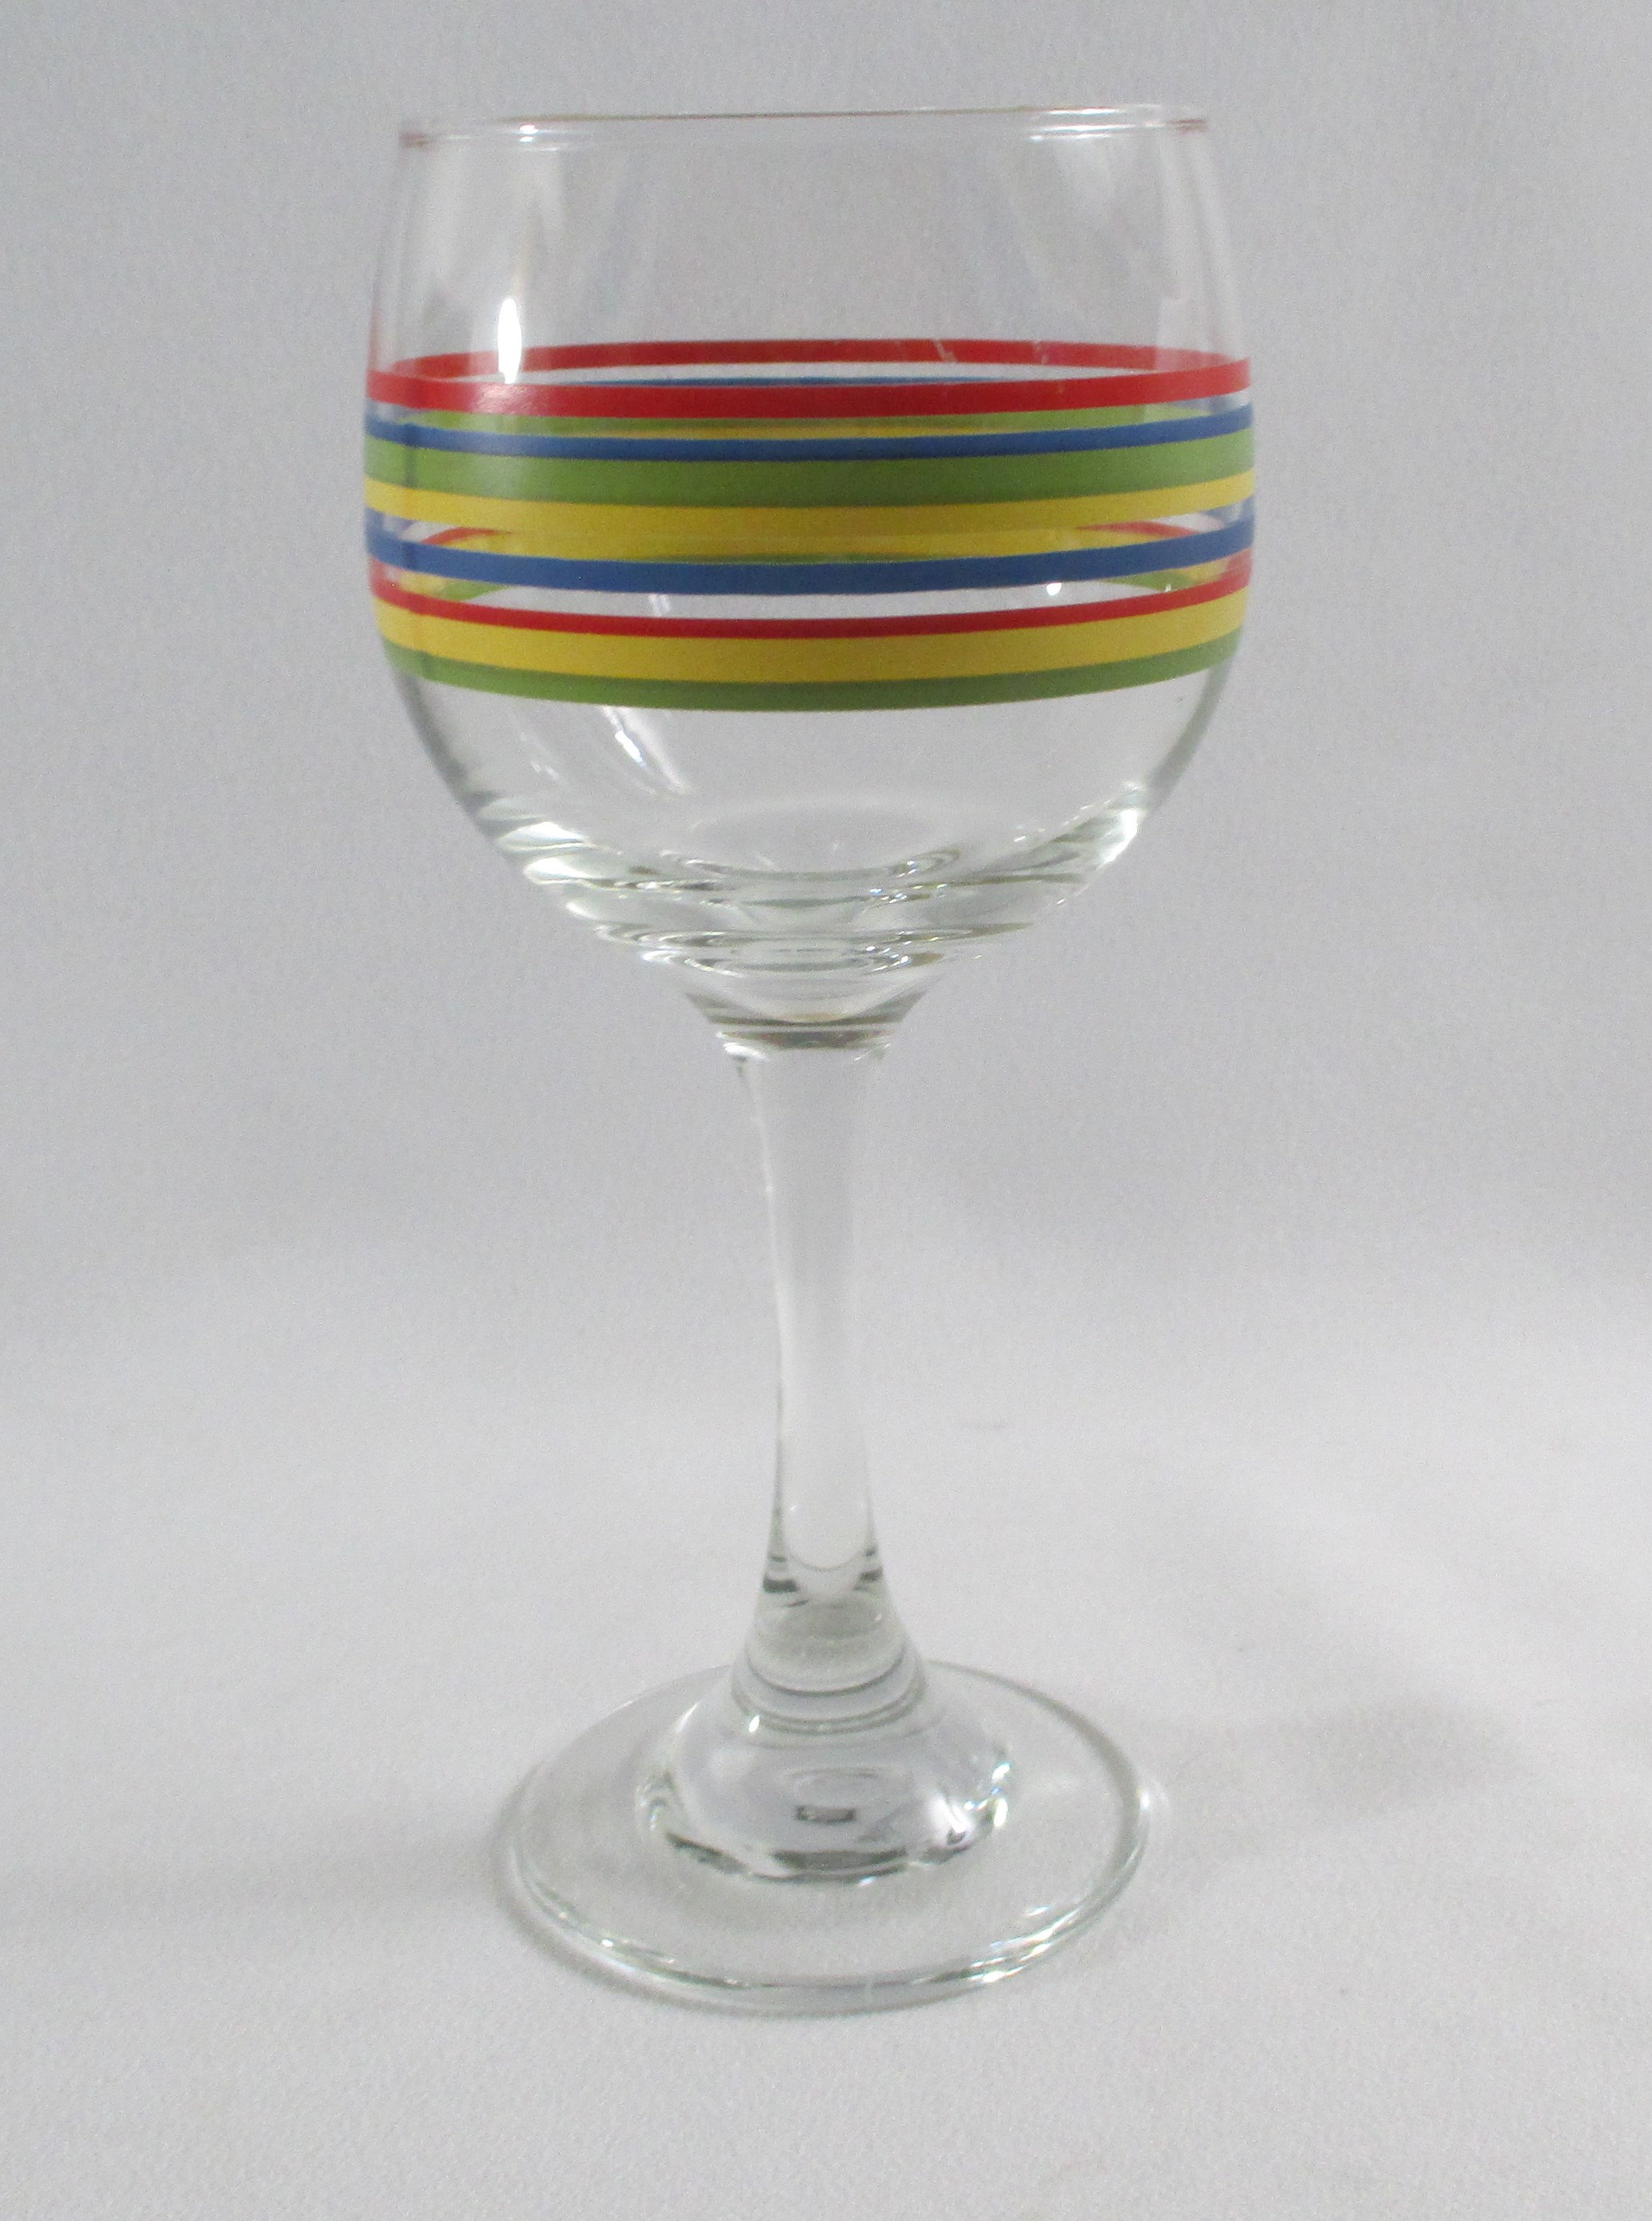 Mamba Fiesta Glassware by Libbey Glass Mamba Drinking Glasses 